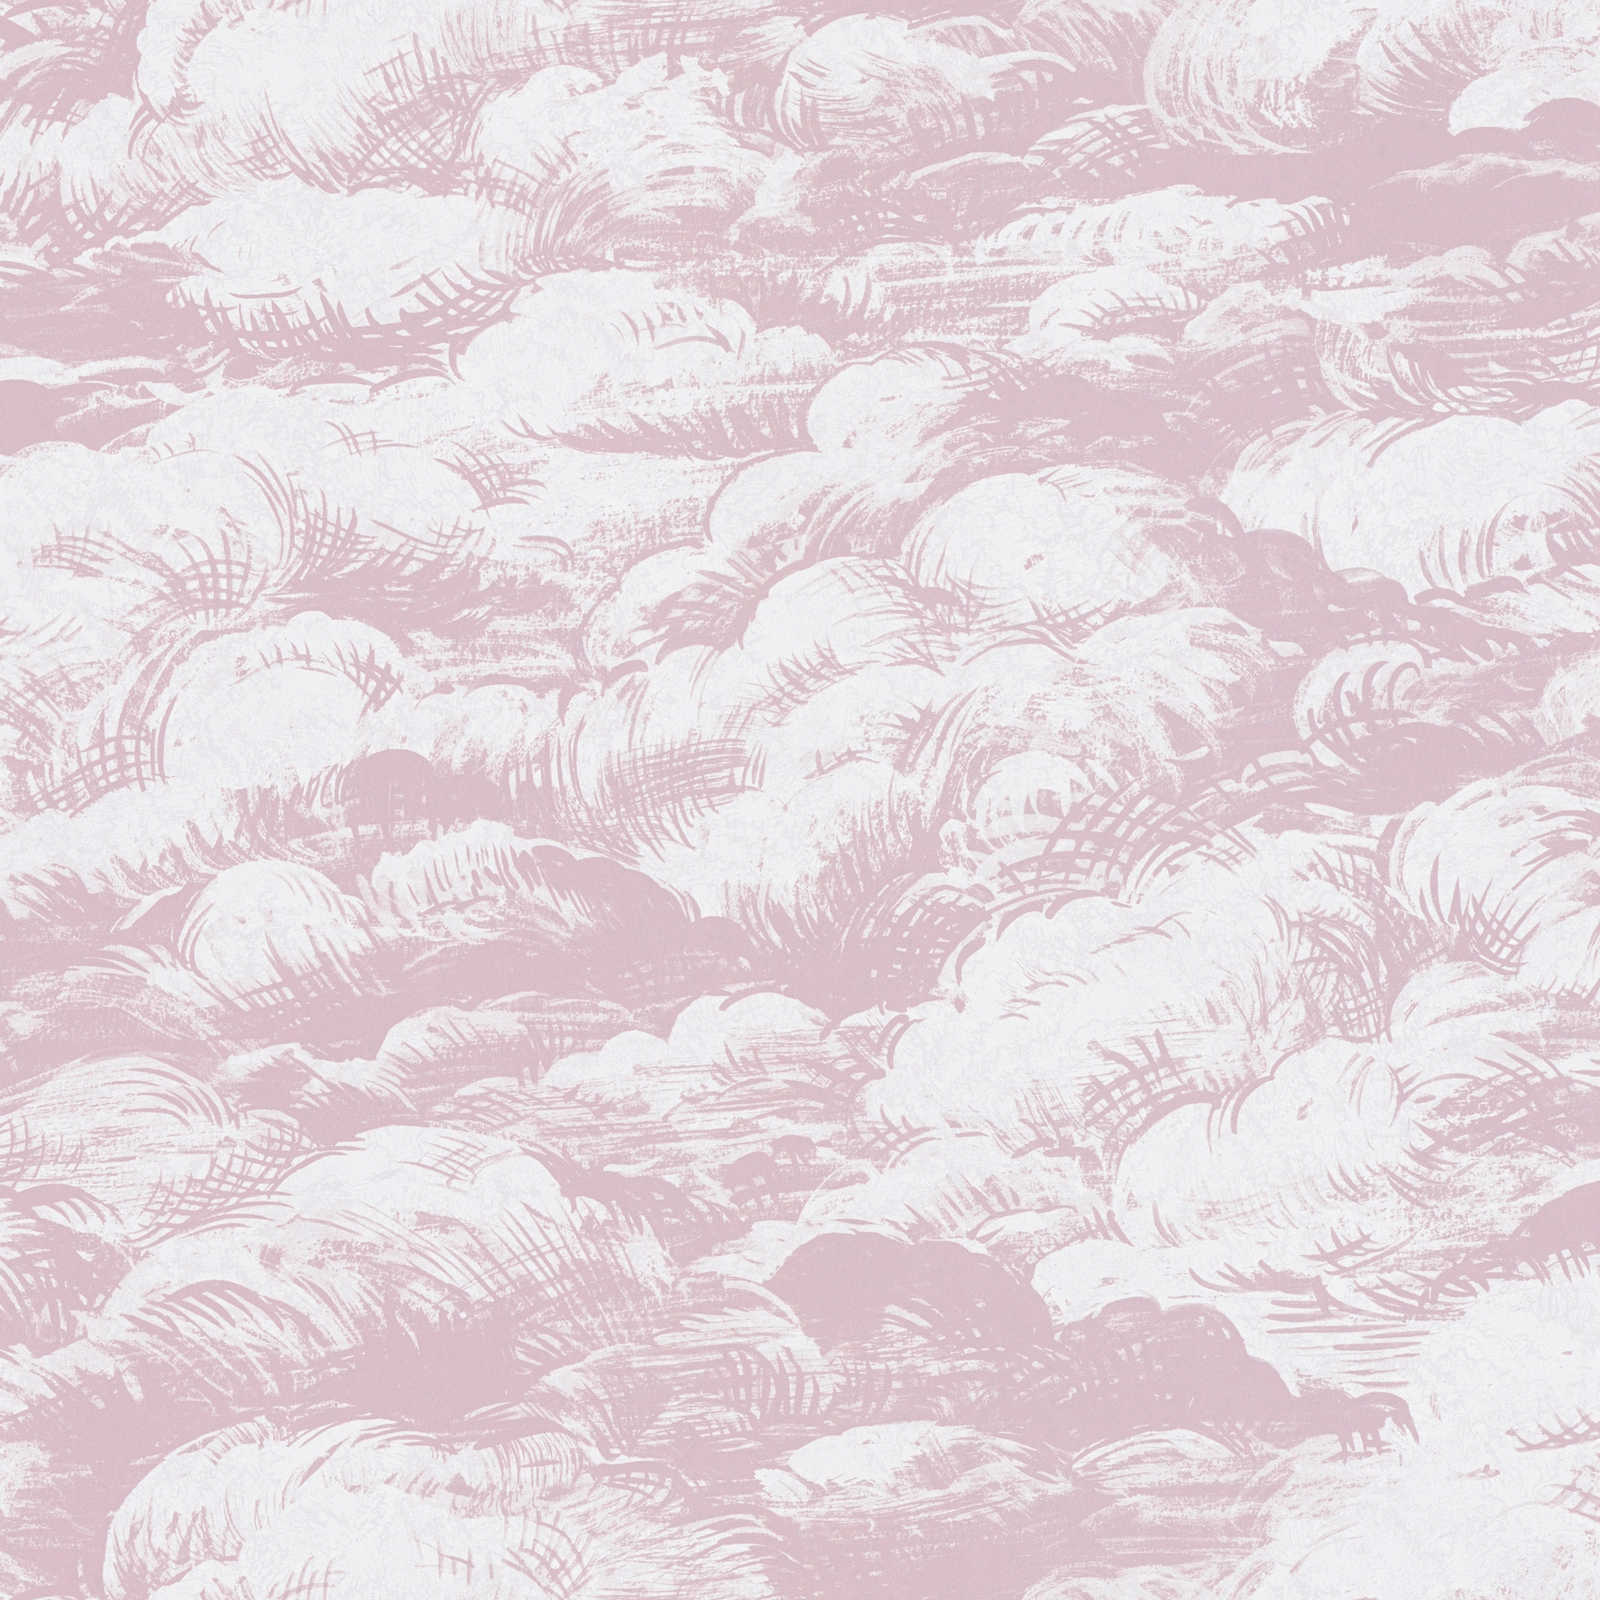 Wallpaper old pink clouds design vintage landscape - pink, white
